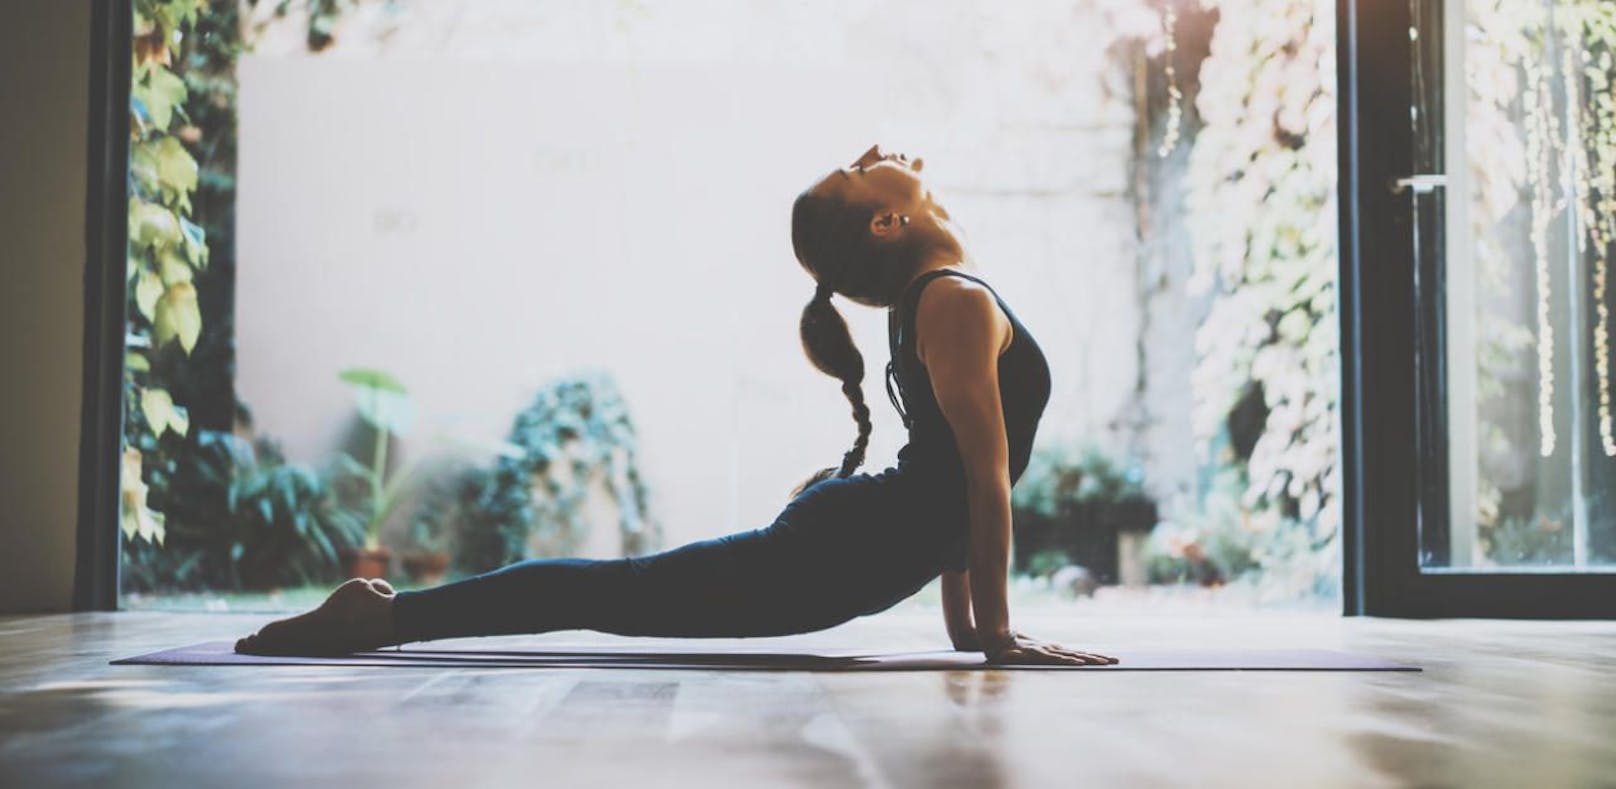 Teilen Sie ein Bild Ihrer liebsten Yoga-Position mit uns!